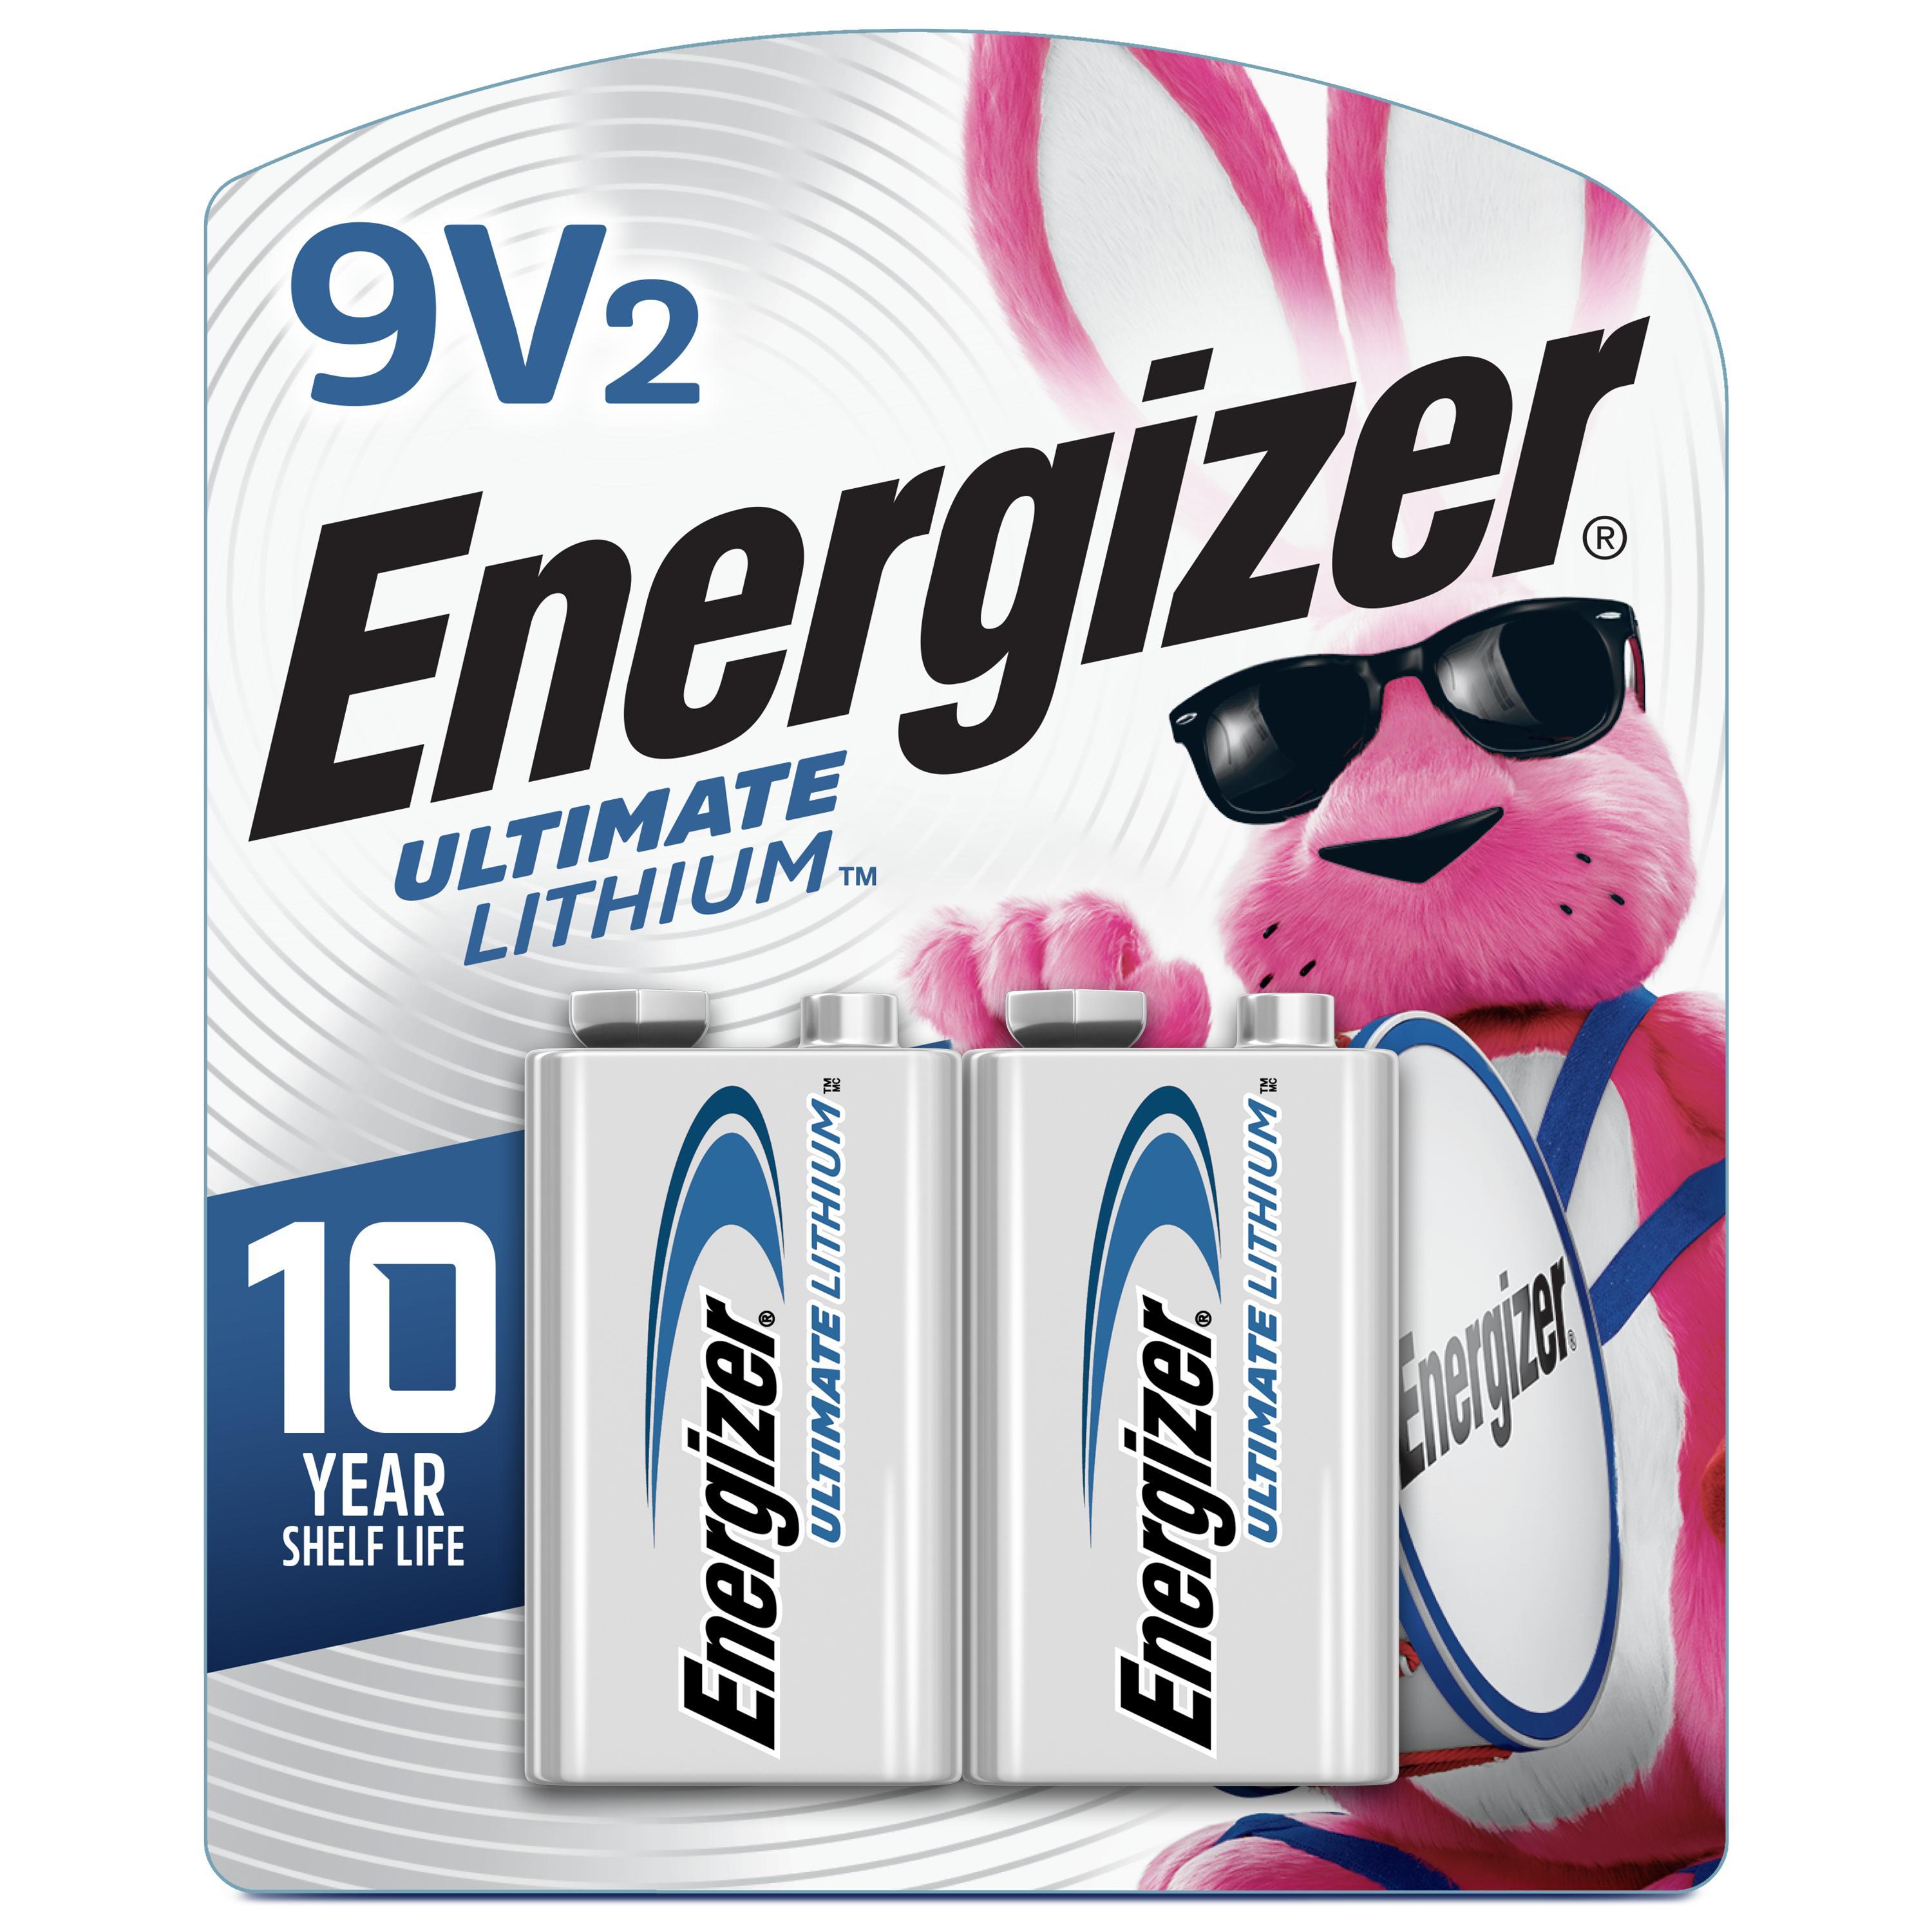 Energizer® L522BP2